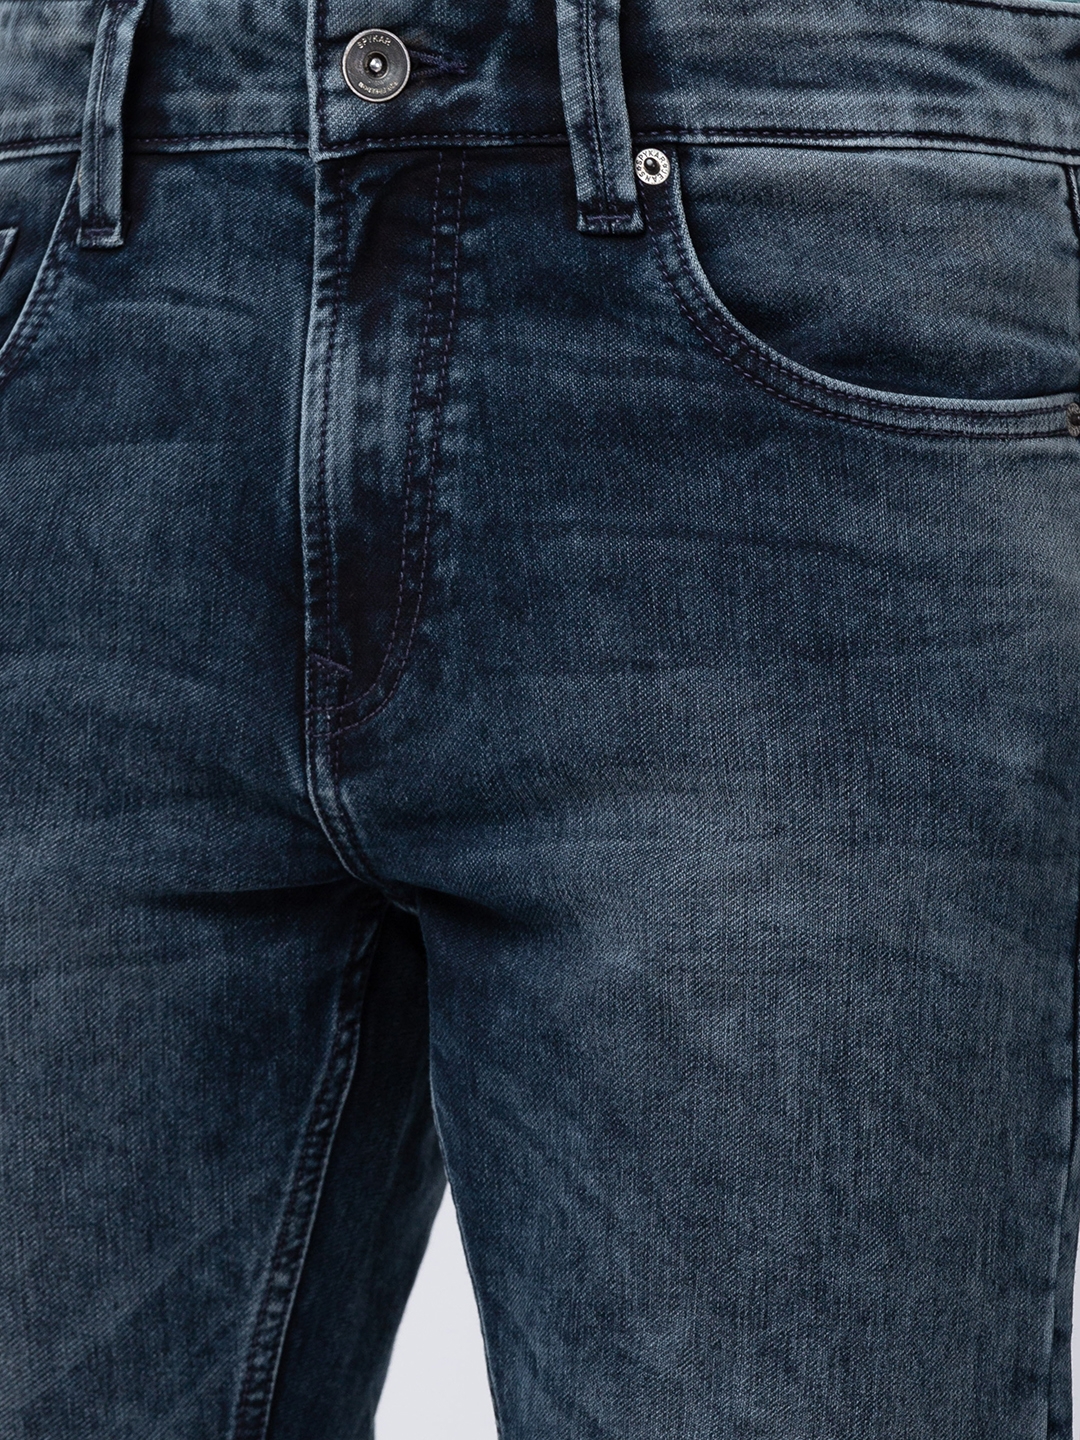 spykar | Men's Blue Cotton Solid Jeans 4